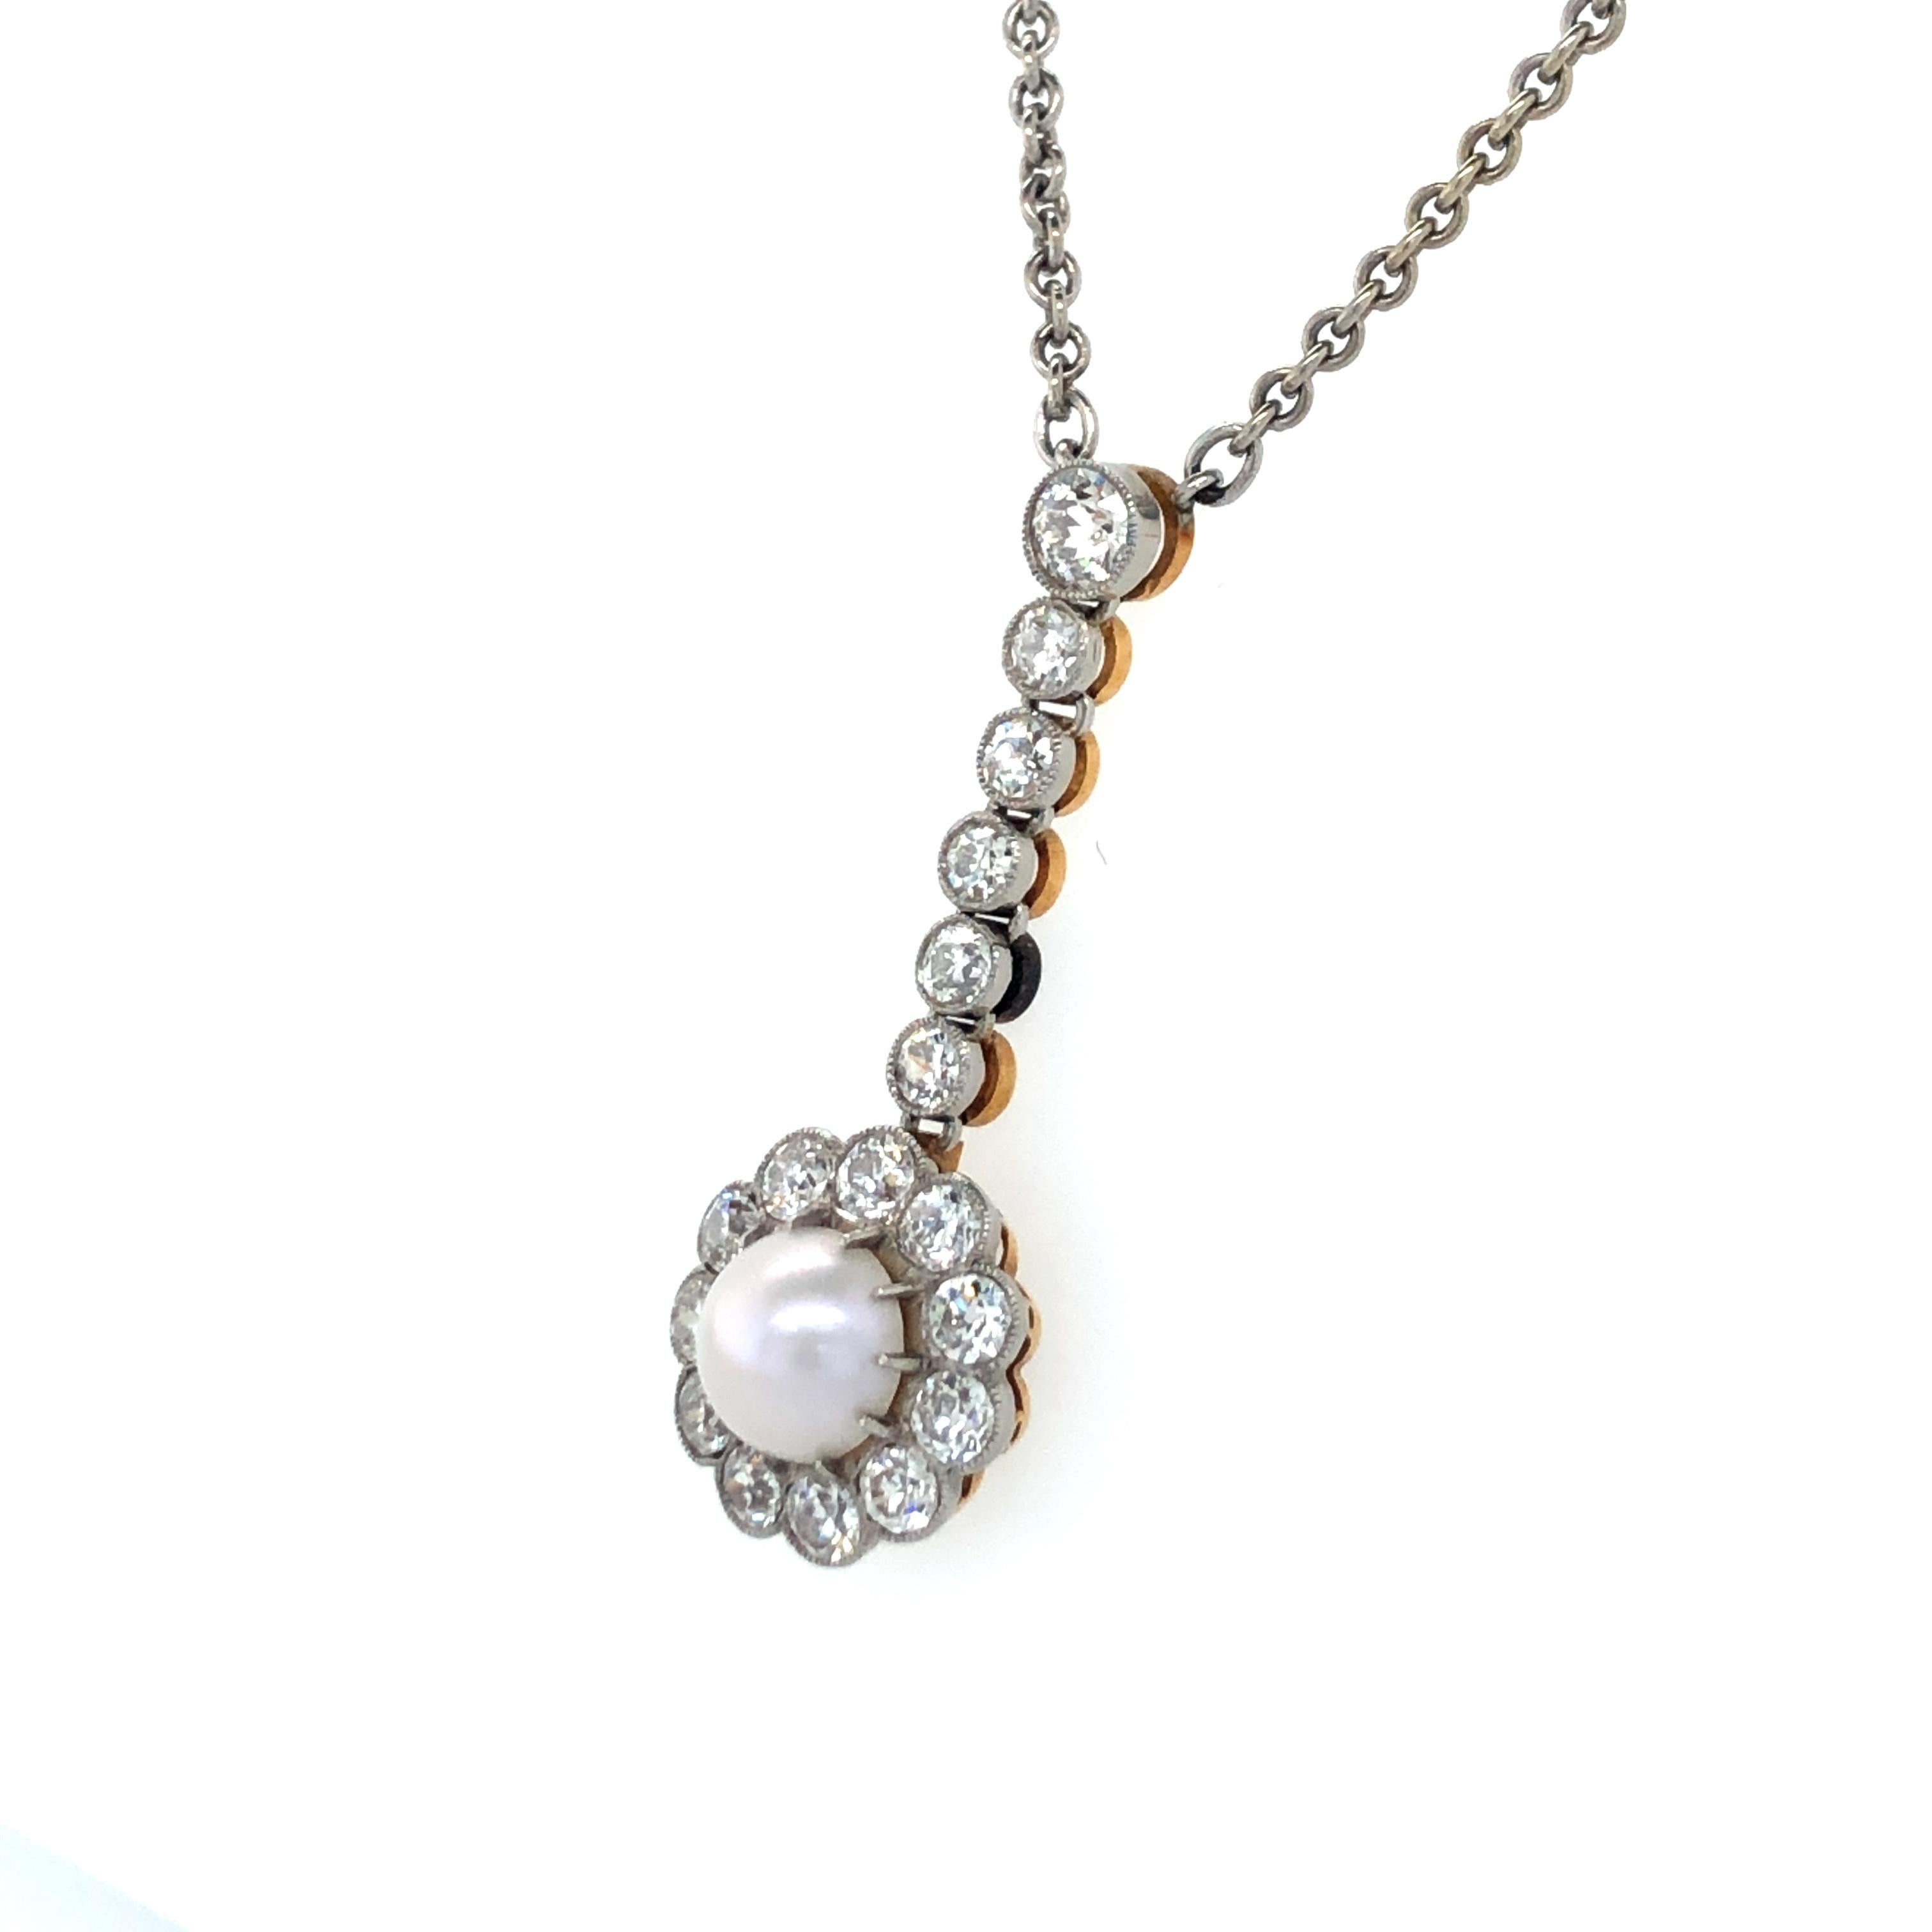 Dieses bezaubernde Belle-Époque-Halsband besteht aus einer weißen Halbperle mit einem Durchmesser von 6,6 mm, die in 11 zierlichen Zacken gefasst und von 11 Diamanten im alten europäischen Schliff von Farbe H/I und Reinheit Si umgeben ist. Diese